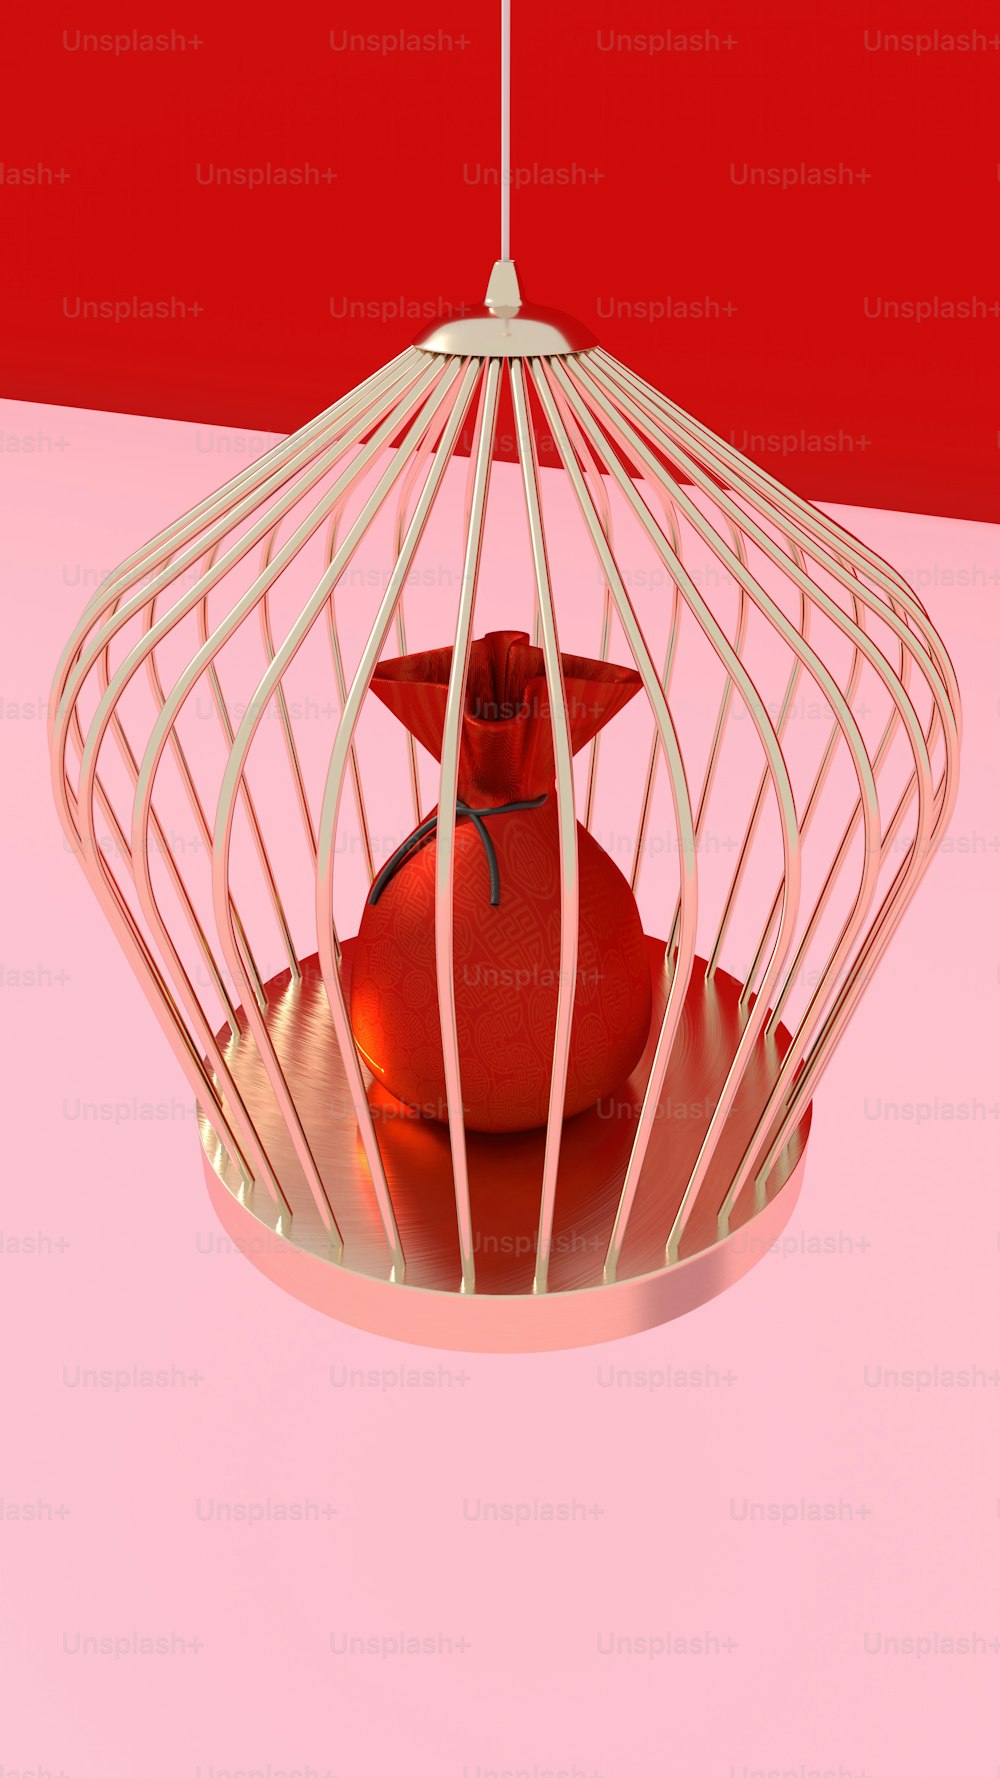 Un uccello in una gabbia su una superficie rosa